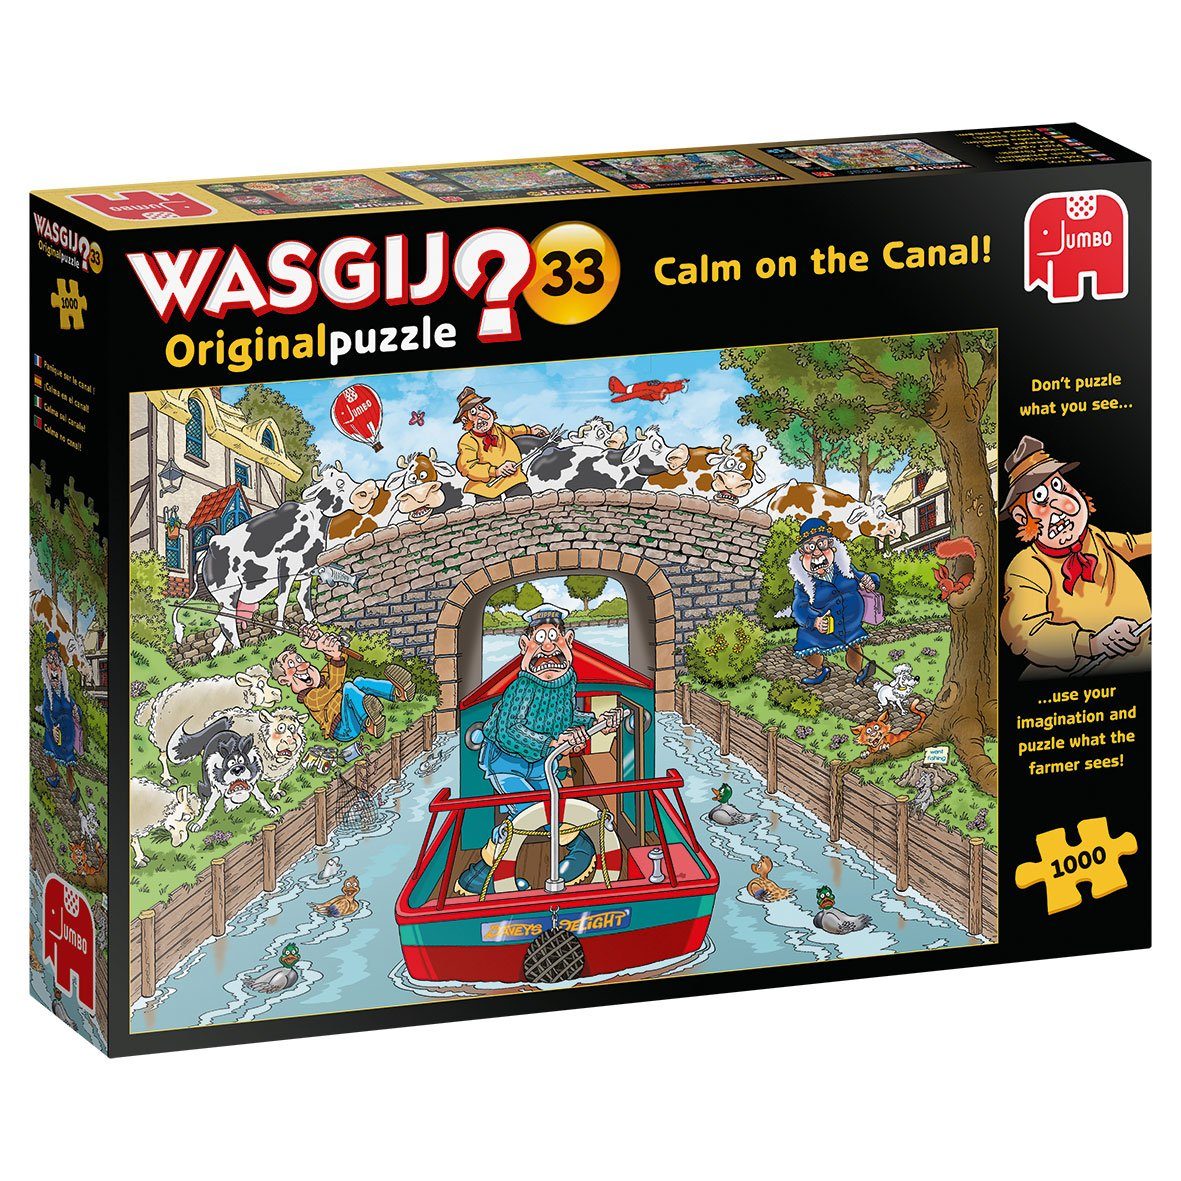 Jumbo Spiele Puzzle Wasgij Original was Farmer dem Puzzleteile, Kanal, Fahrt Puzzeln sieht. der 1000 33 Ruhige auf Sie